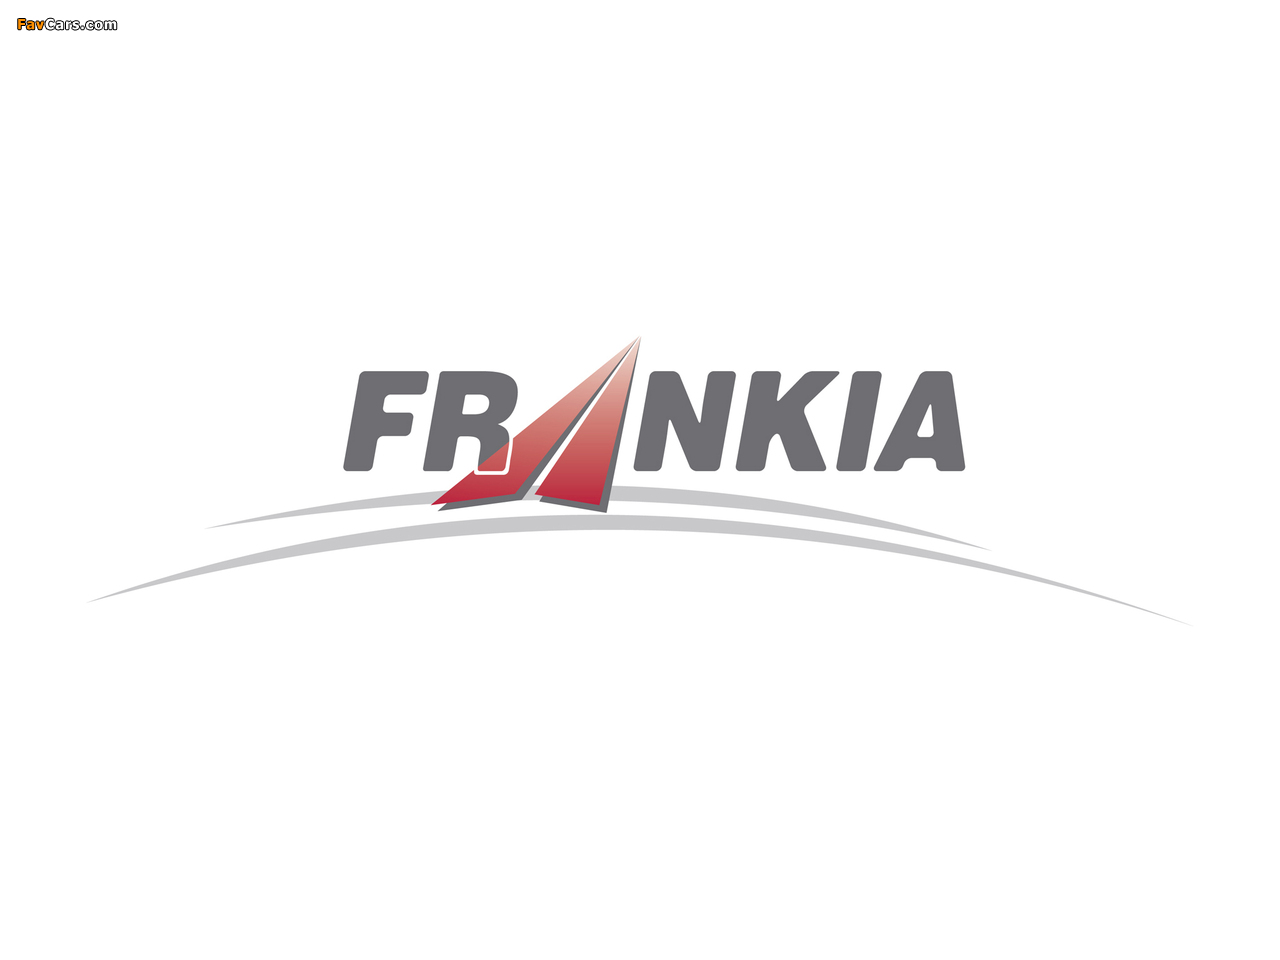 Frankia pictures (1280 x 960)